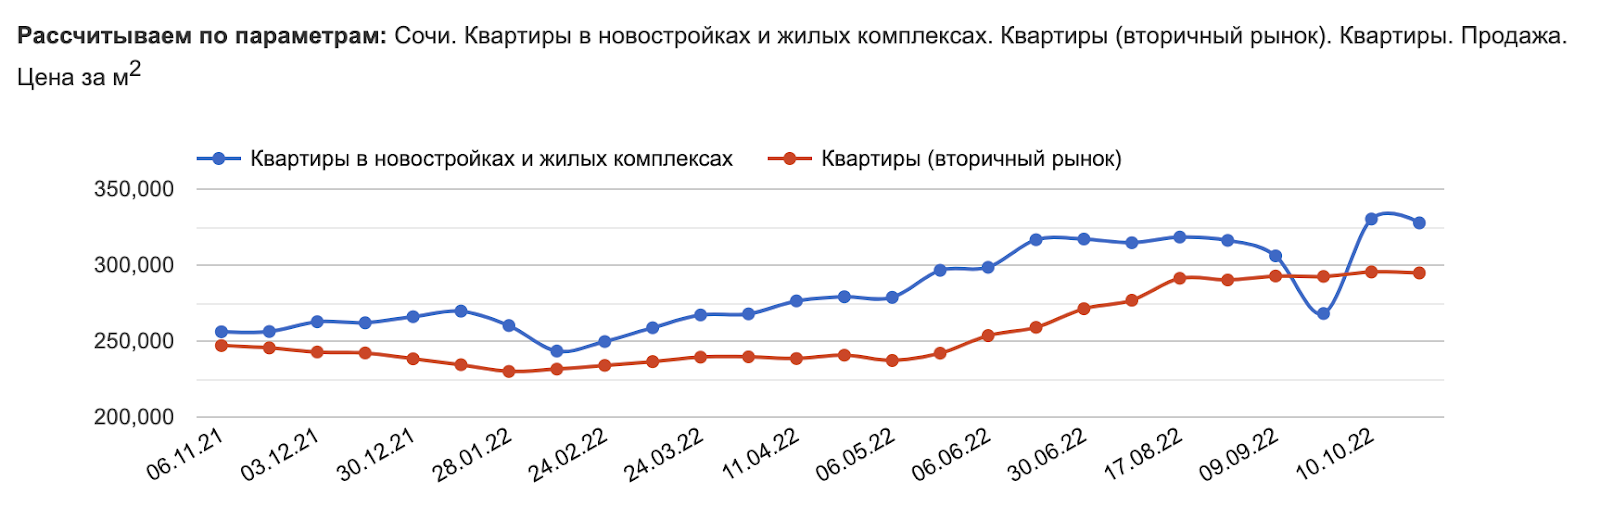 Сочи не падает, Москва потихоньку ползет вниз. Что произошло с ценами на недвижимость в этих городах за месяц?